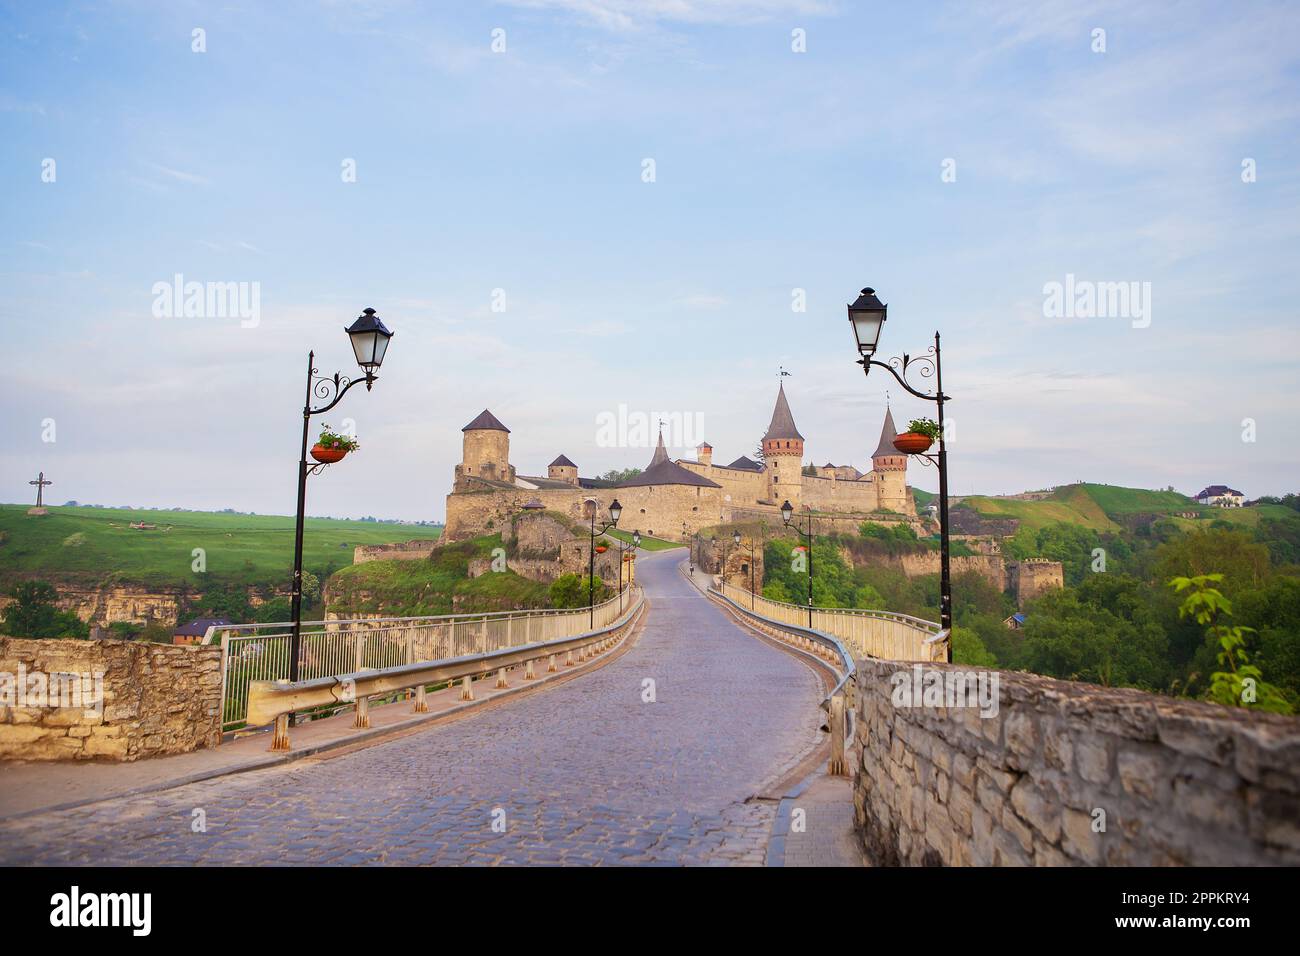 Kamianets-Podilskyi est une ville romantique. Une vue estivale pittoresque de l'ancien château-forteresse à Kamianets-Podilskyi, région de Khmelnytskyi, Ukraine. Banque D'Images